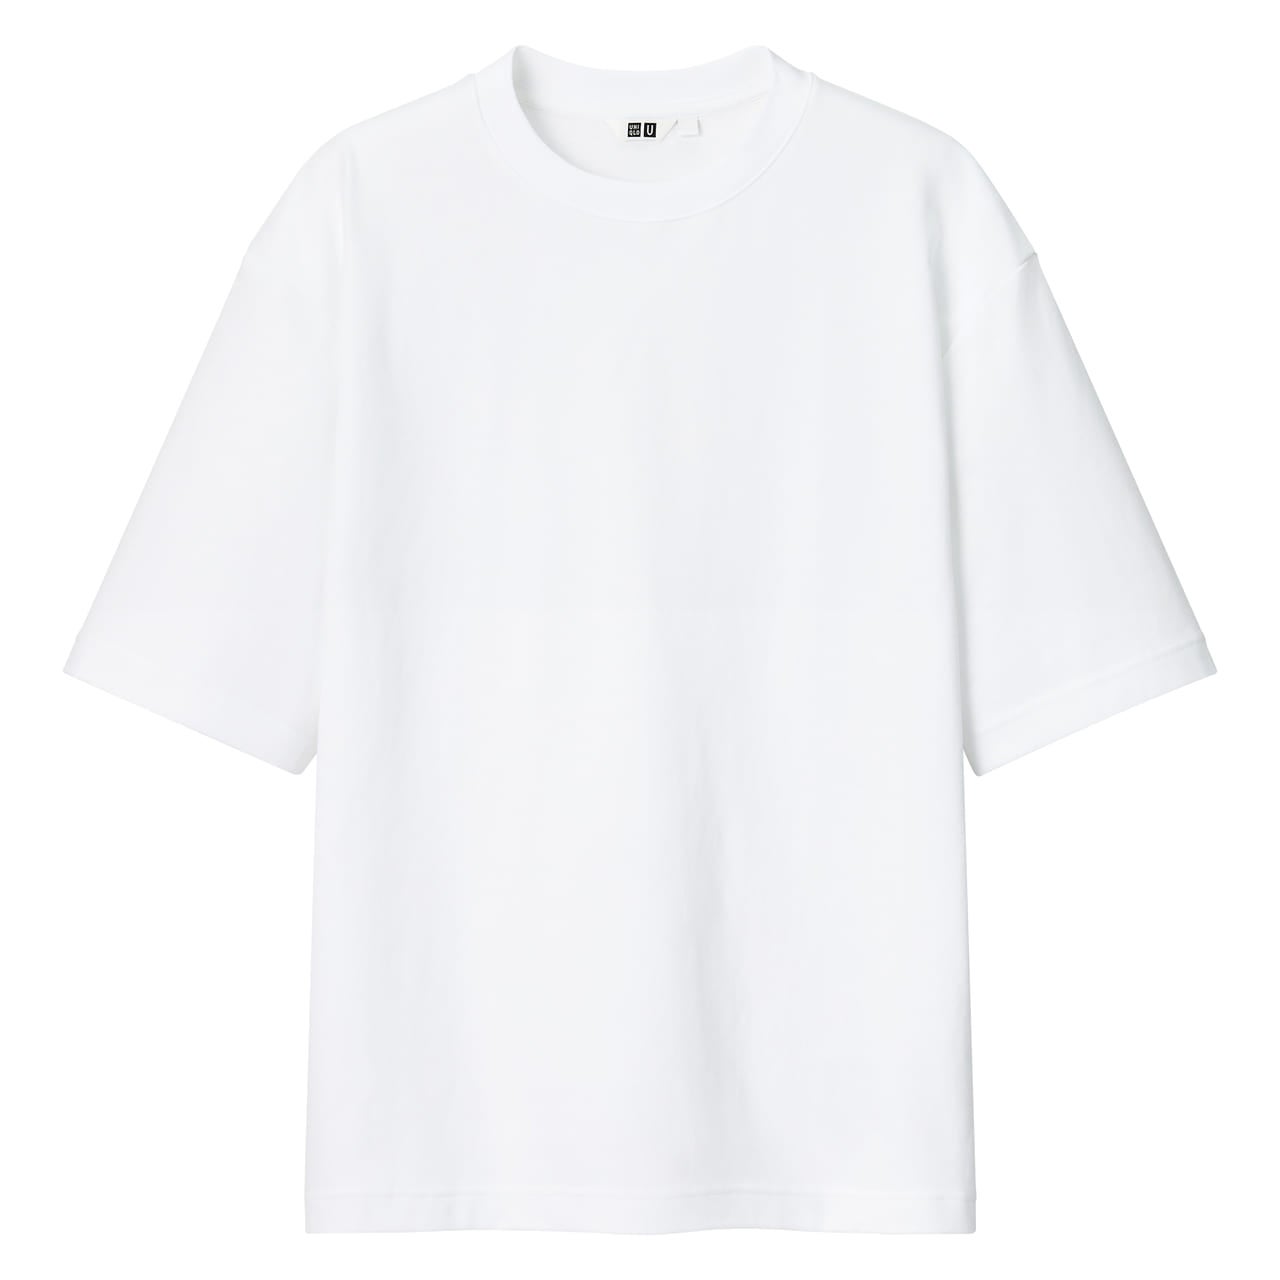 ユニクロ ユー（Uniqlo U）のエアリズムコットンオーバーサイズTシャツ（5分袖） ¥1,990